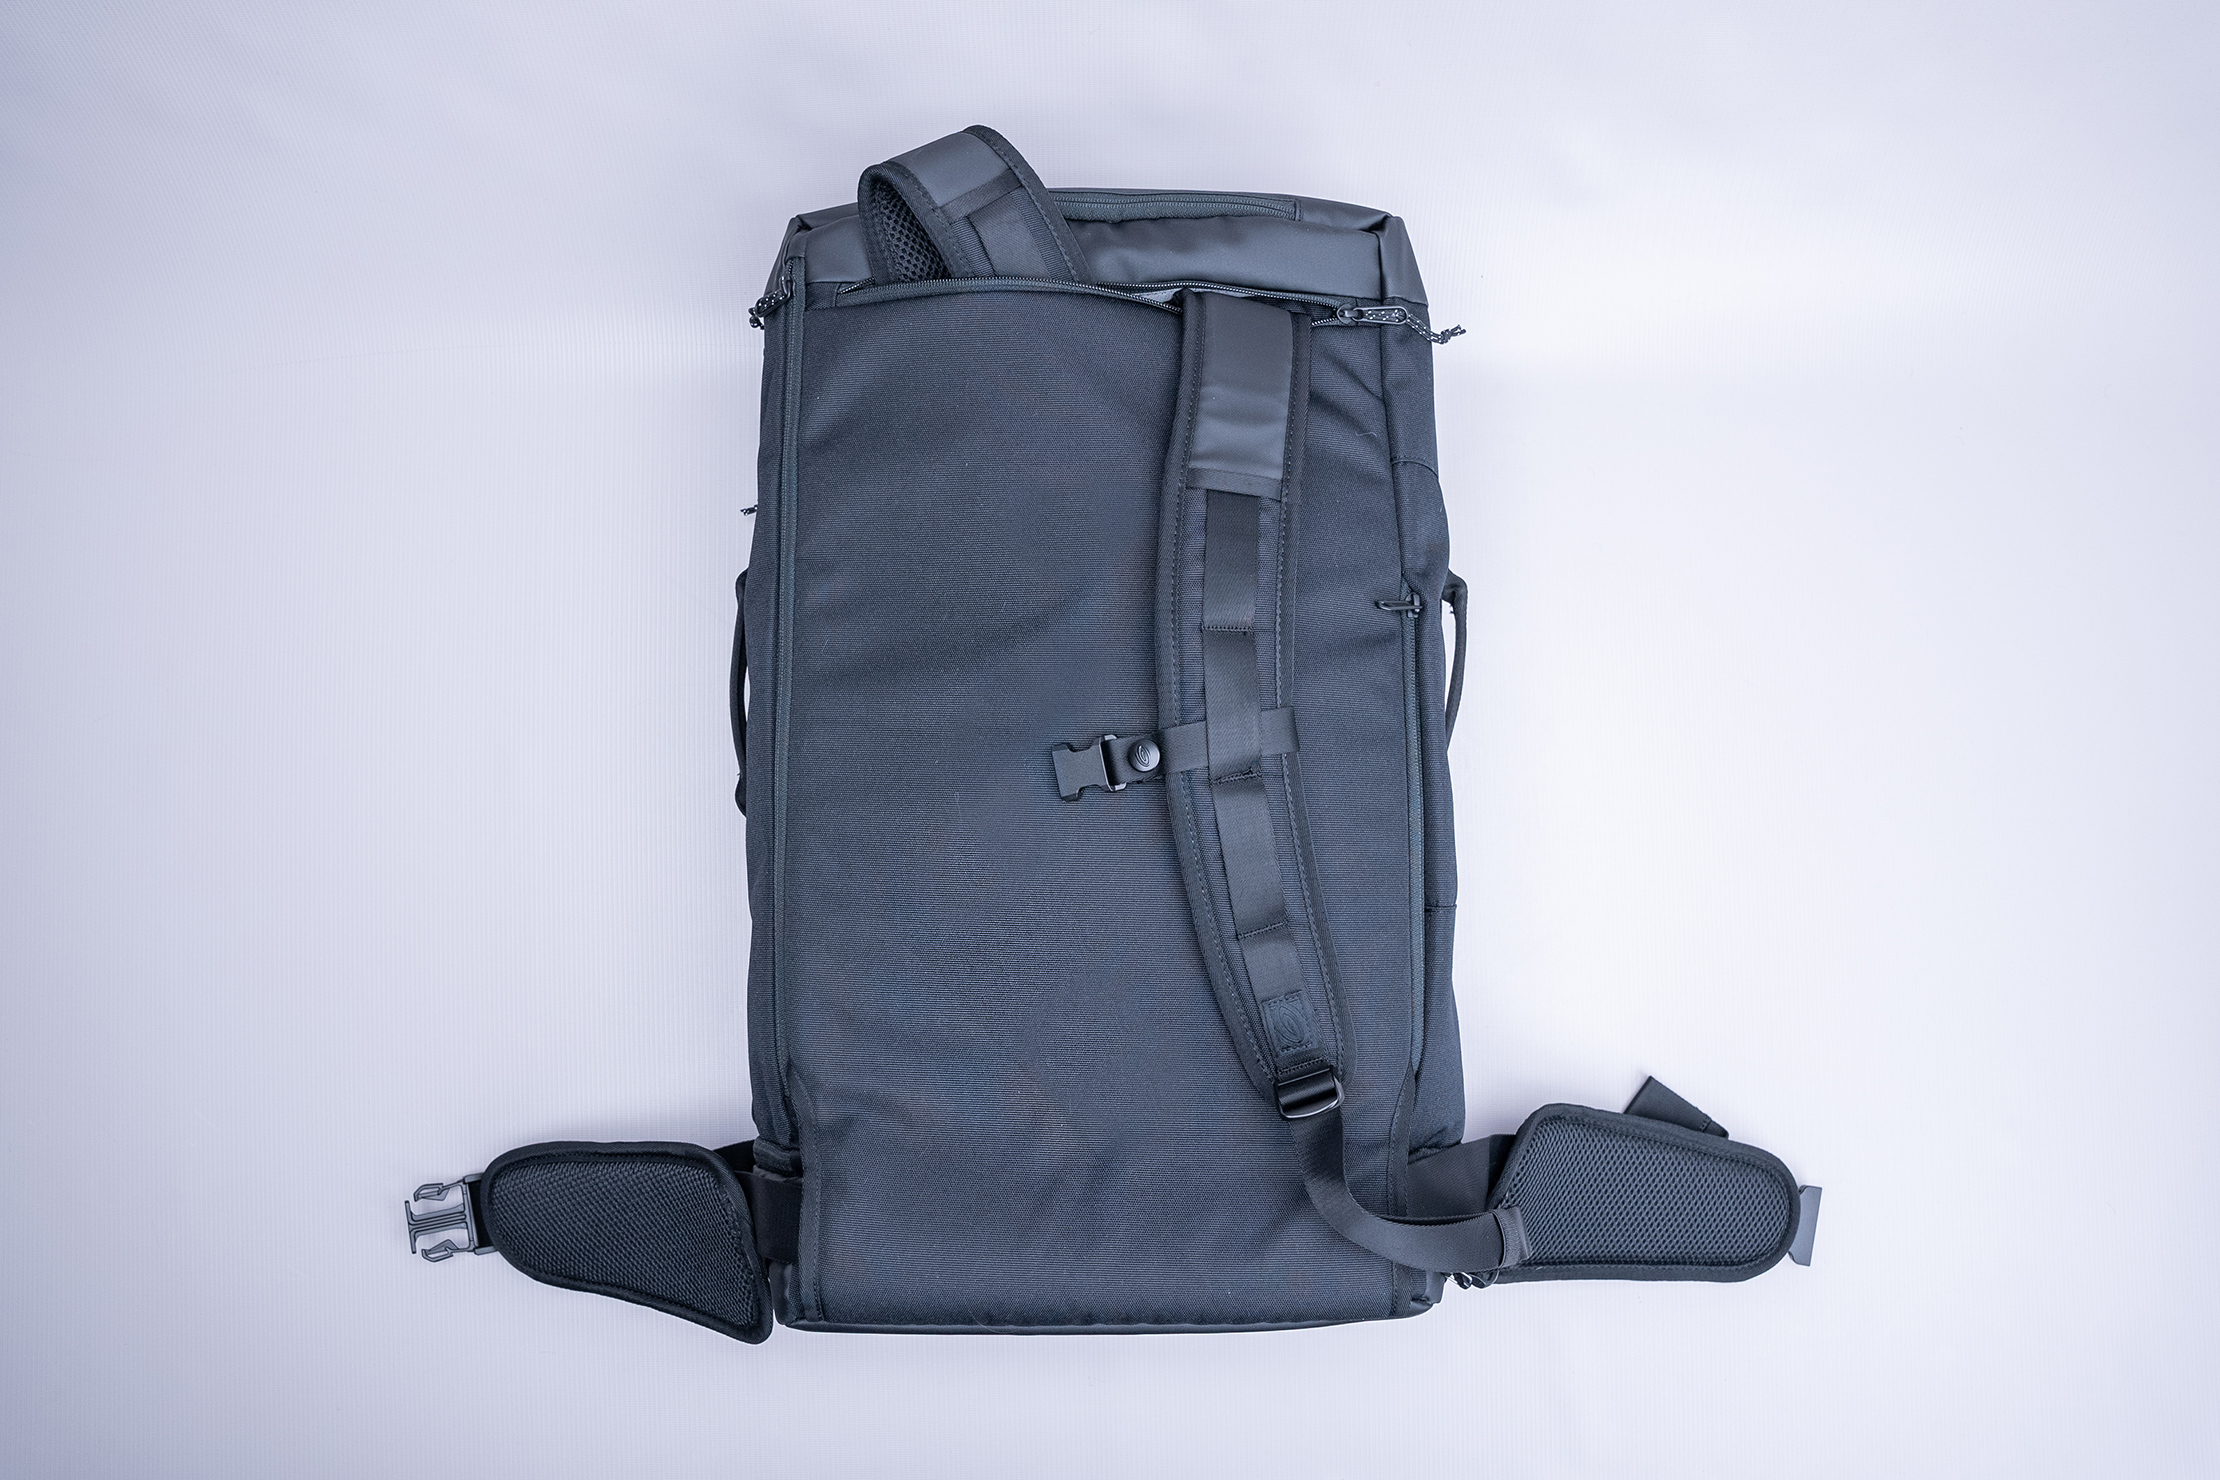 Timbuk2 Wingman Travel Backpack Duffel Harness System